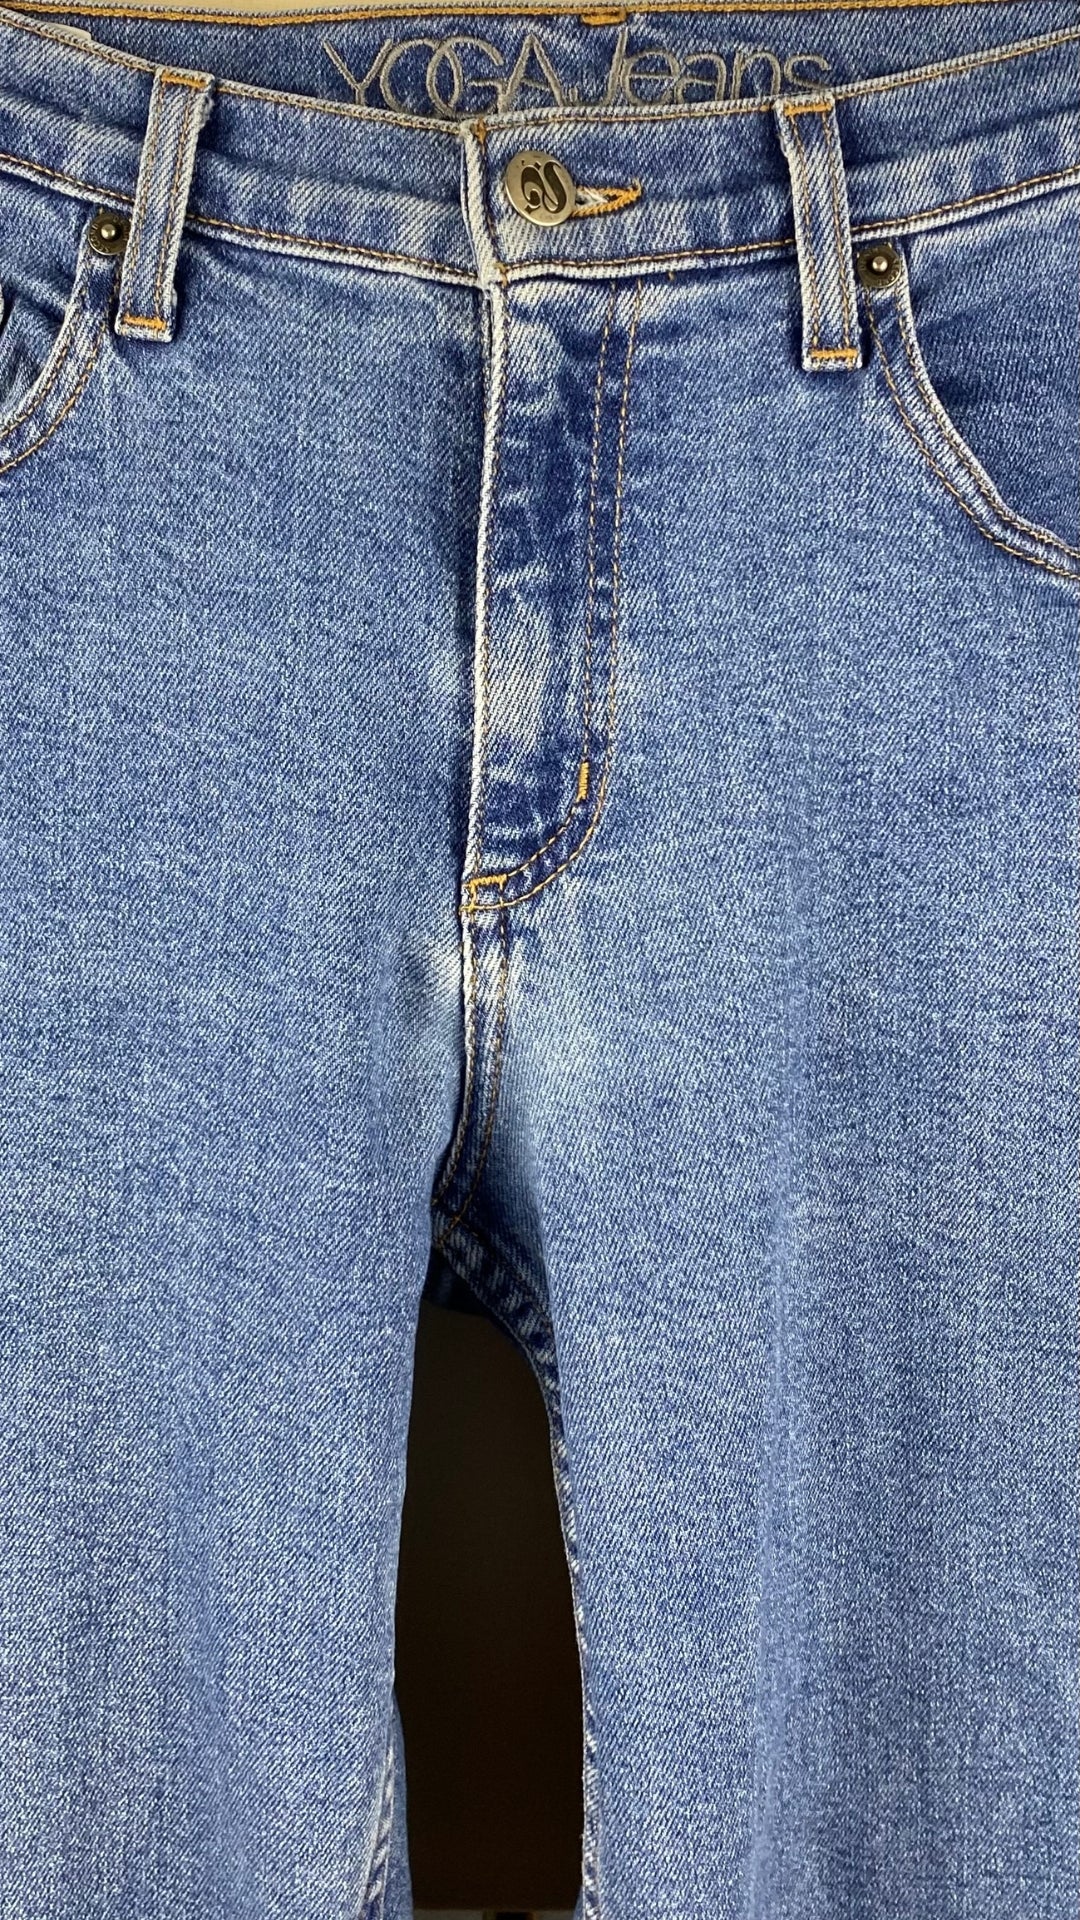 Jeans coupe droite à ourlet brut Yoga Jeans, taille 29. Vue de la taille.